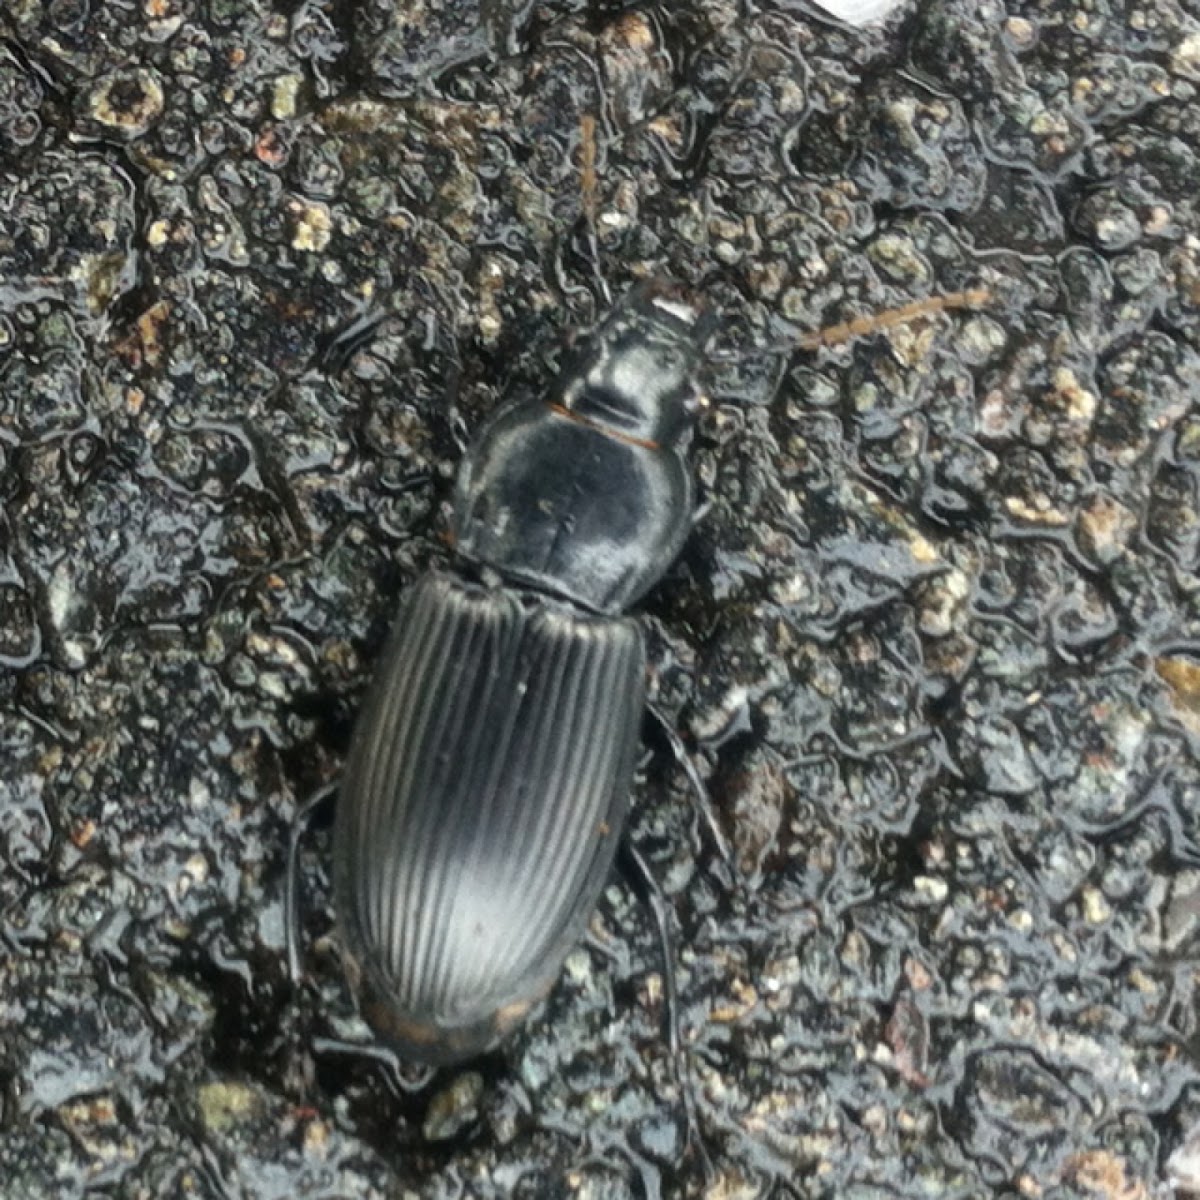 Mealworm beetle